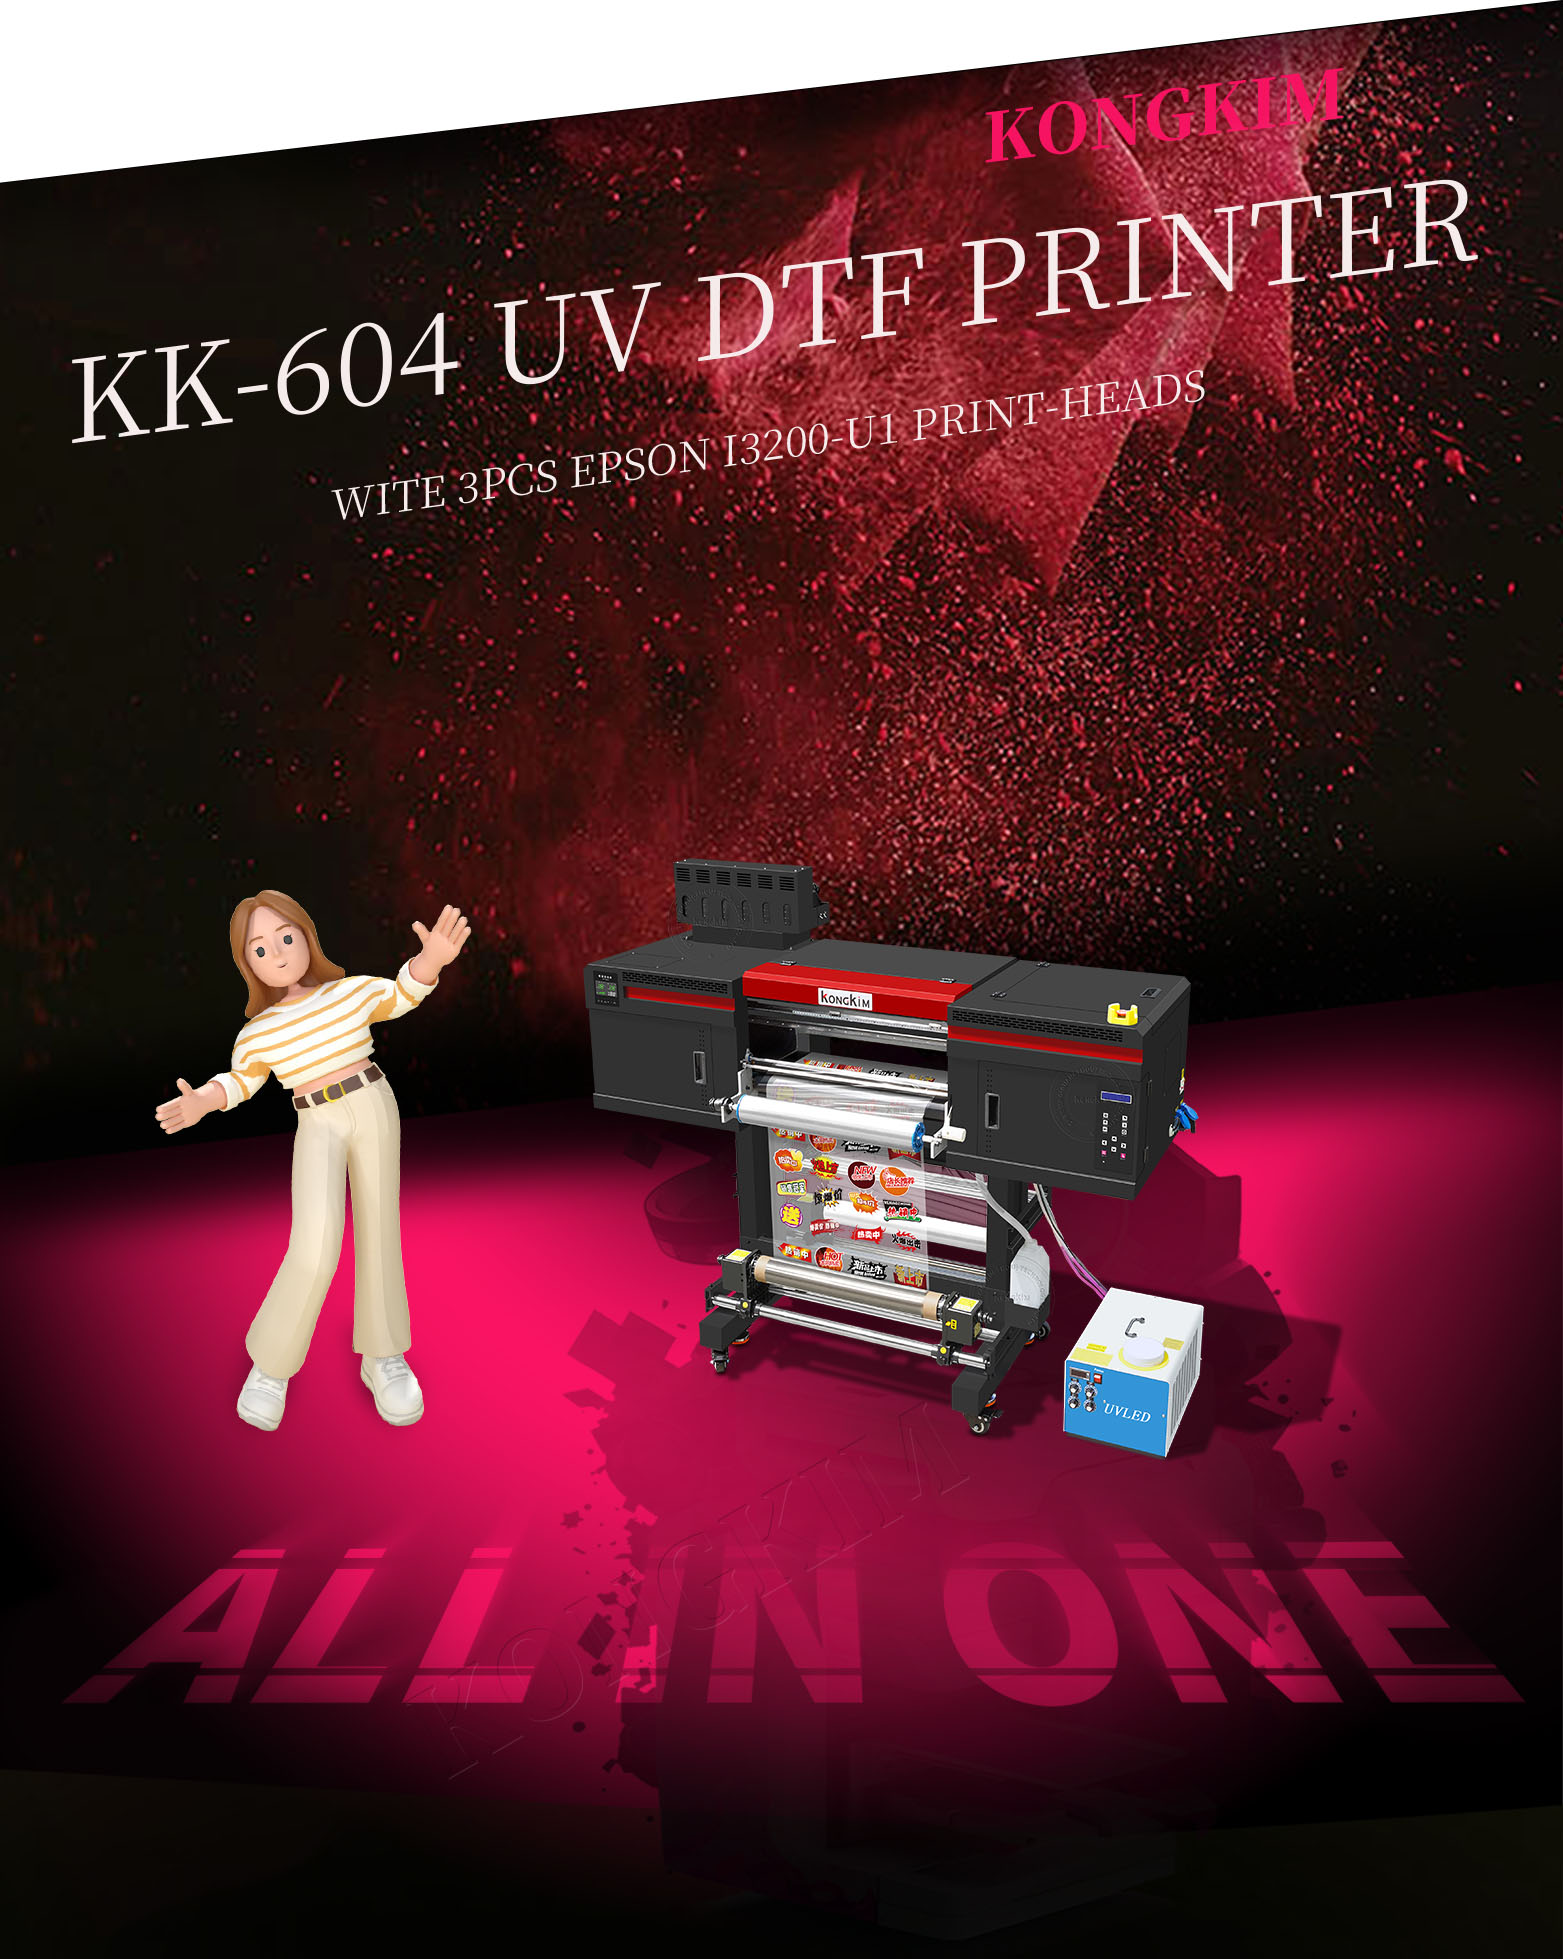 printer uv dtf